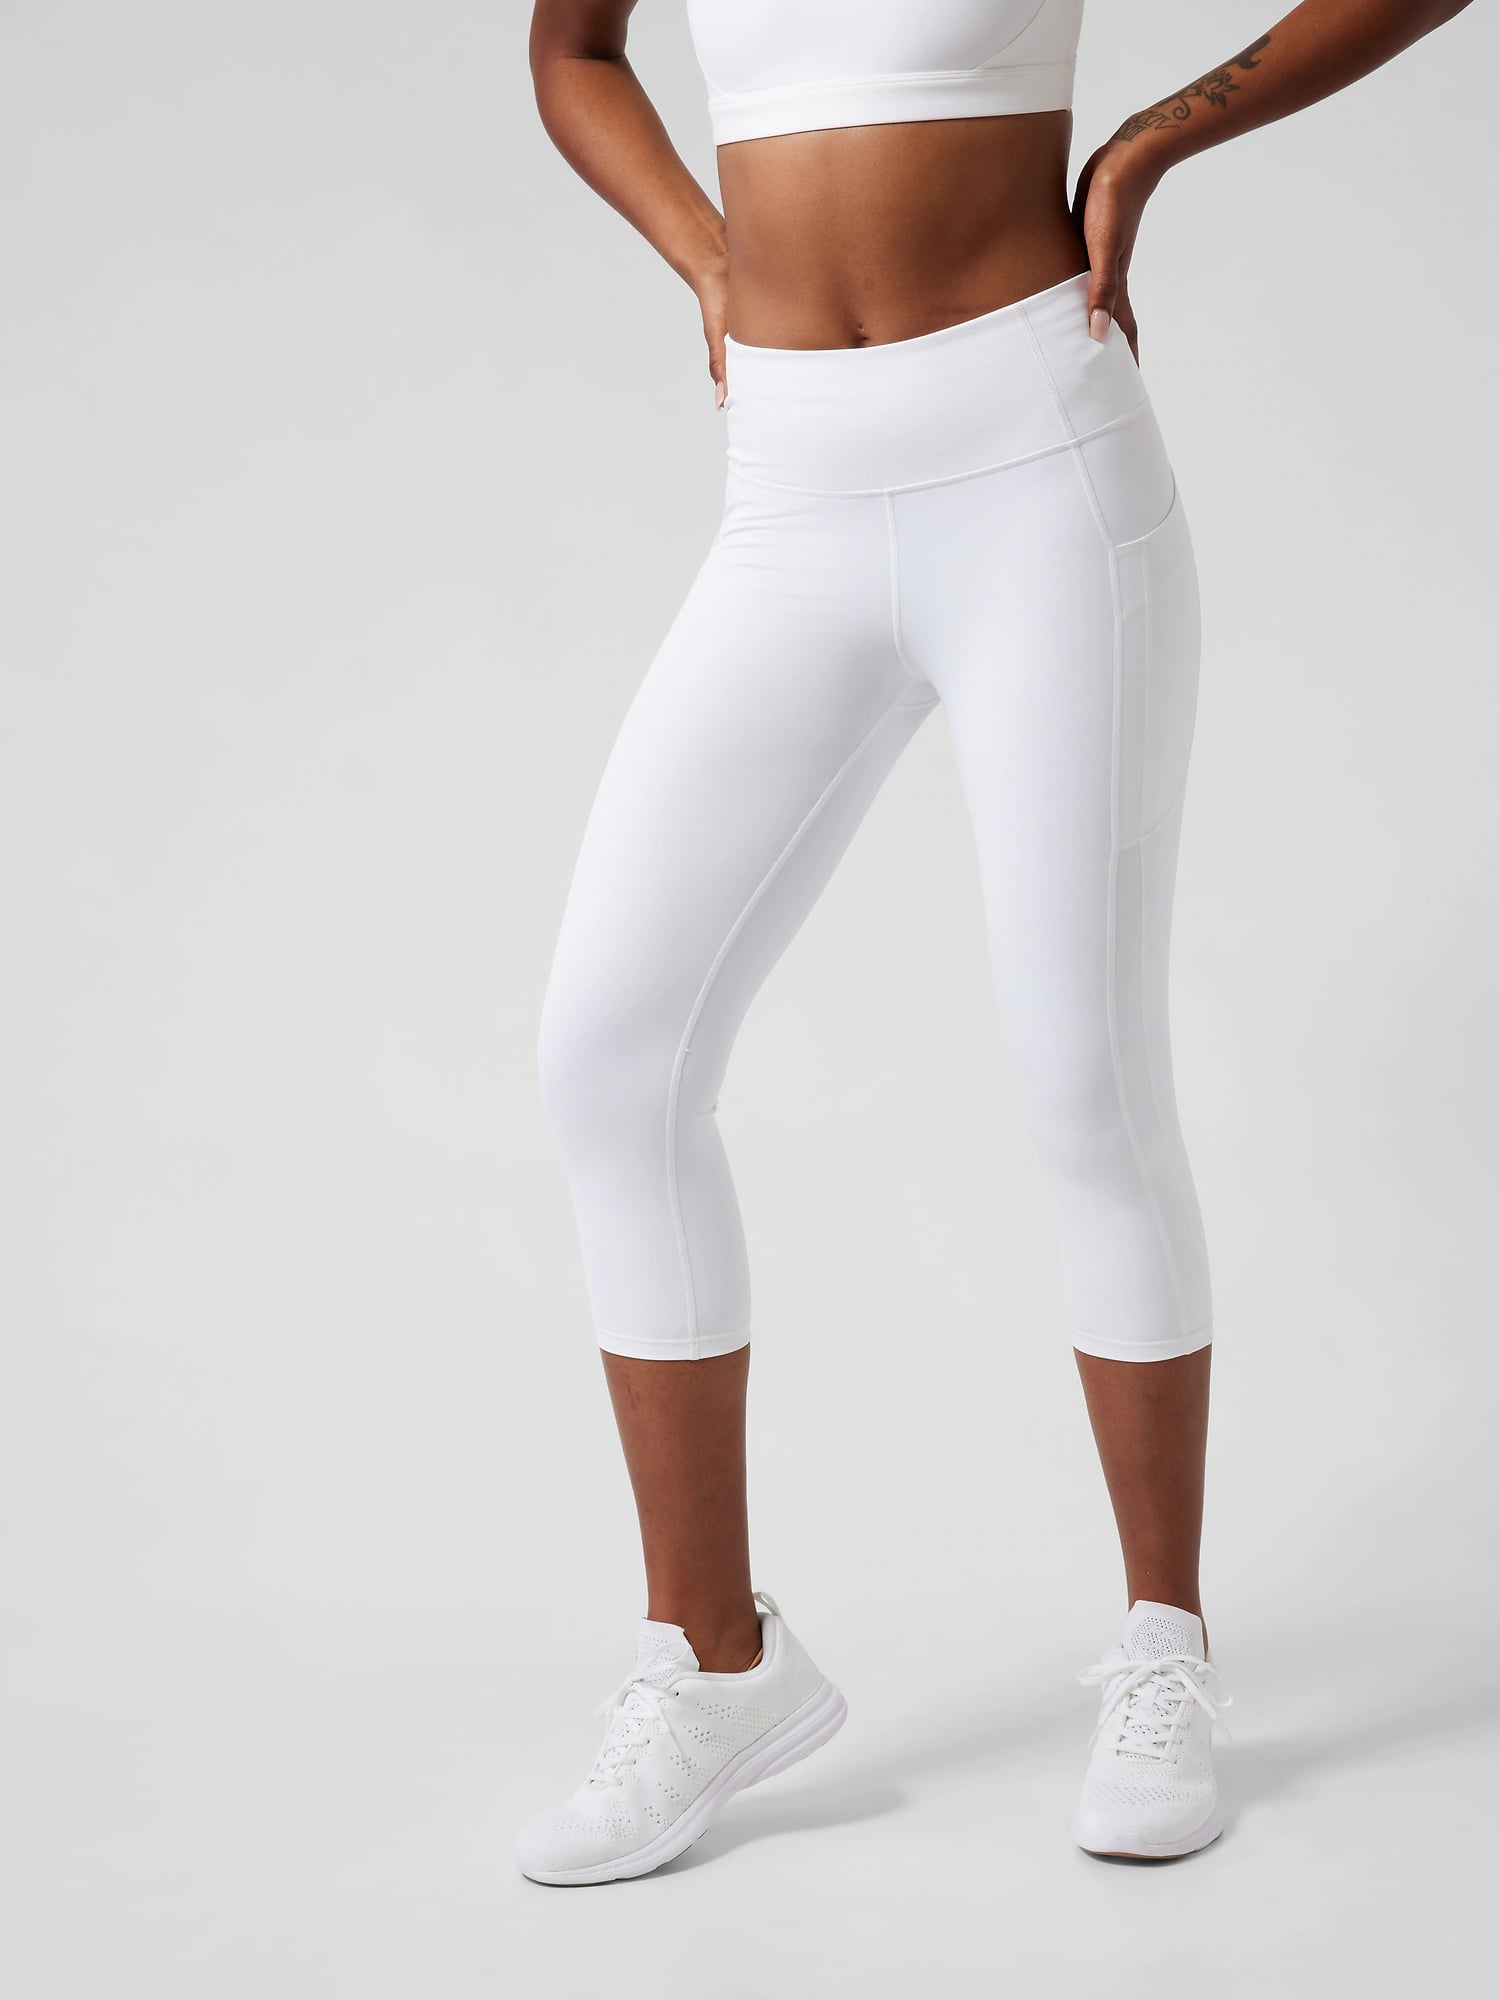 OVESPORT Women's Sport Leggings CK2208 Size Small White